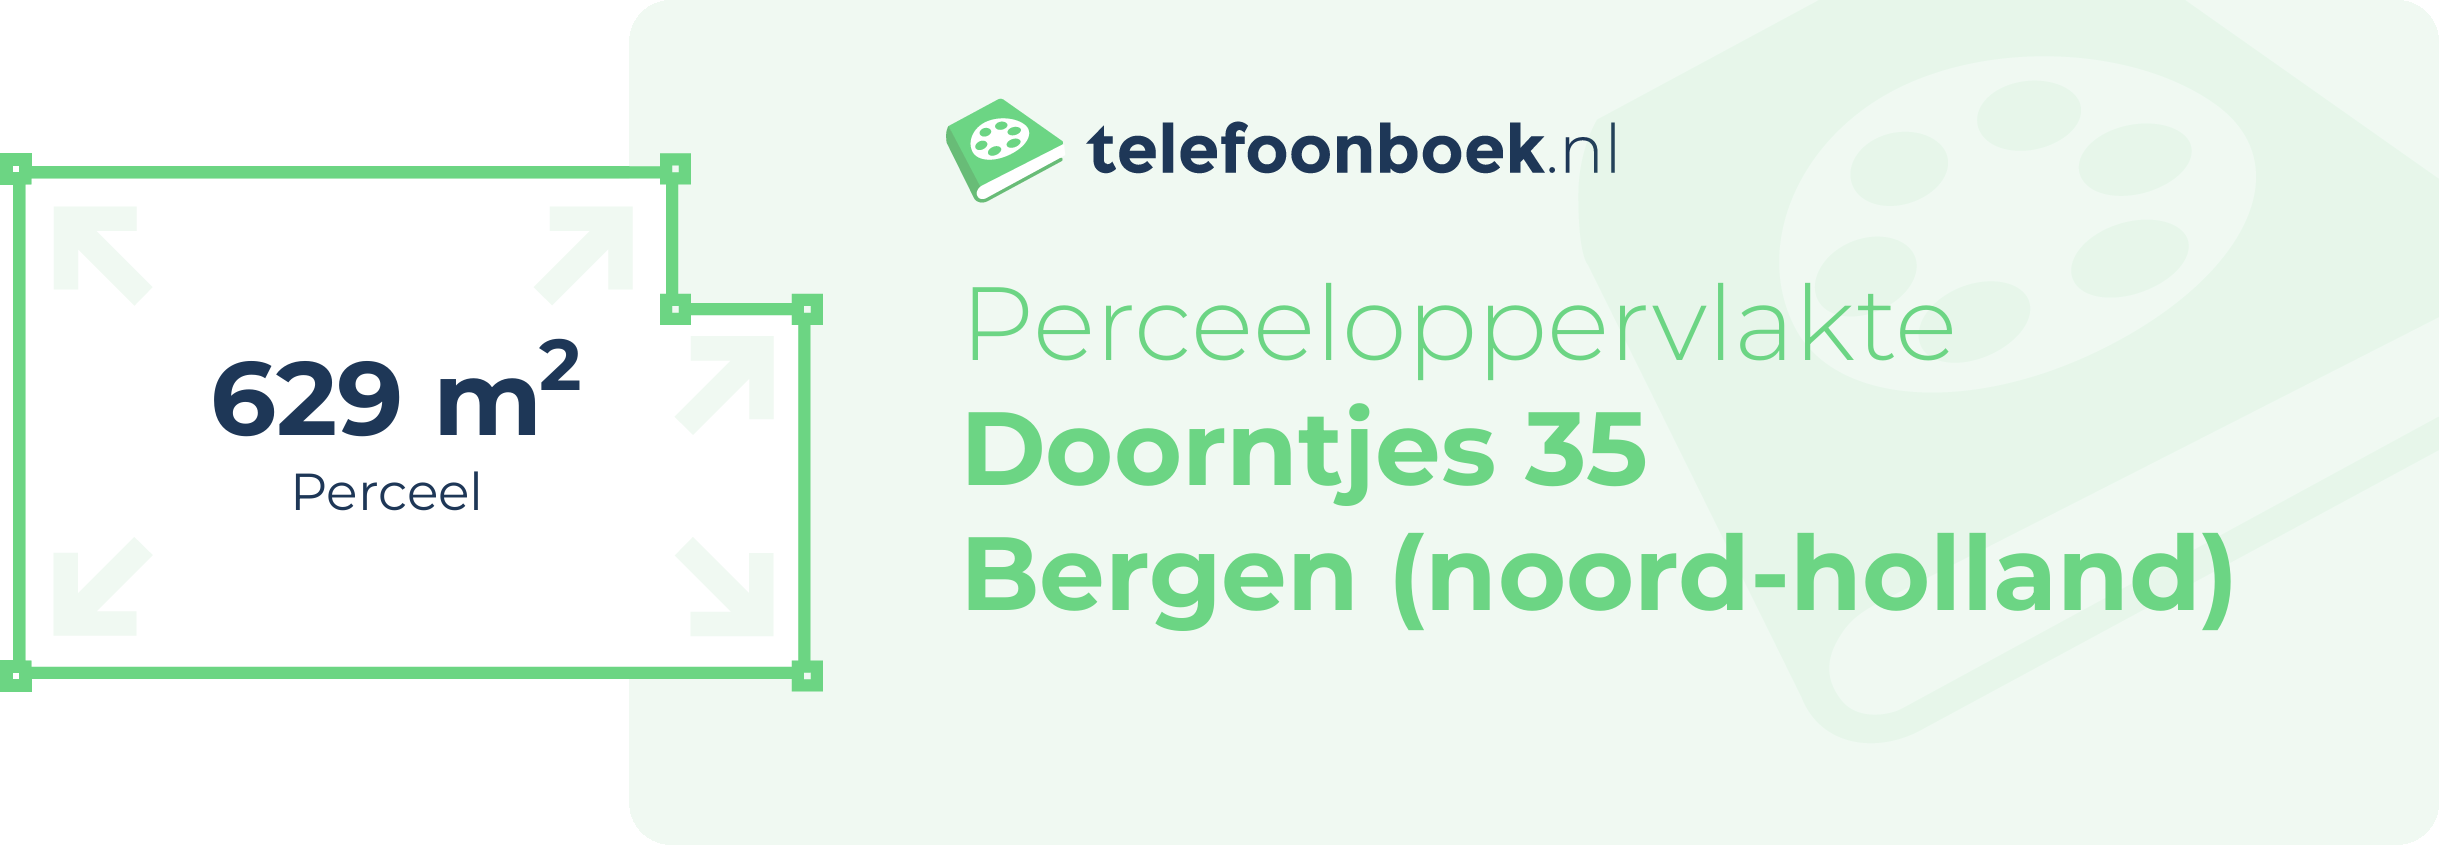 Perceeloppervlakte Doorntjes 35 Bergen (Noord-Holland)